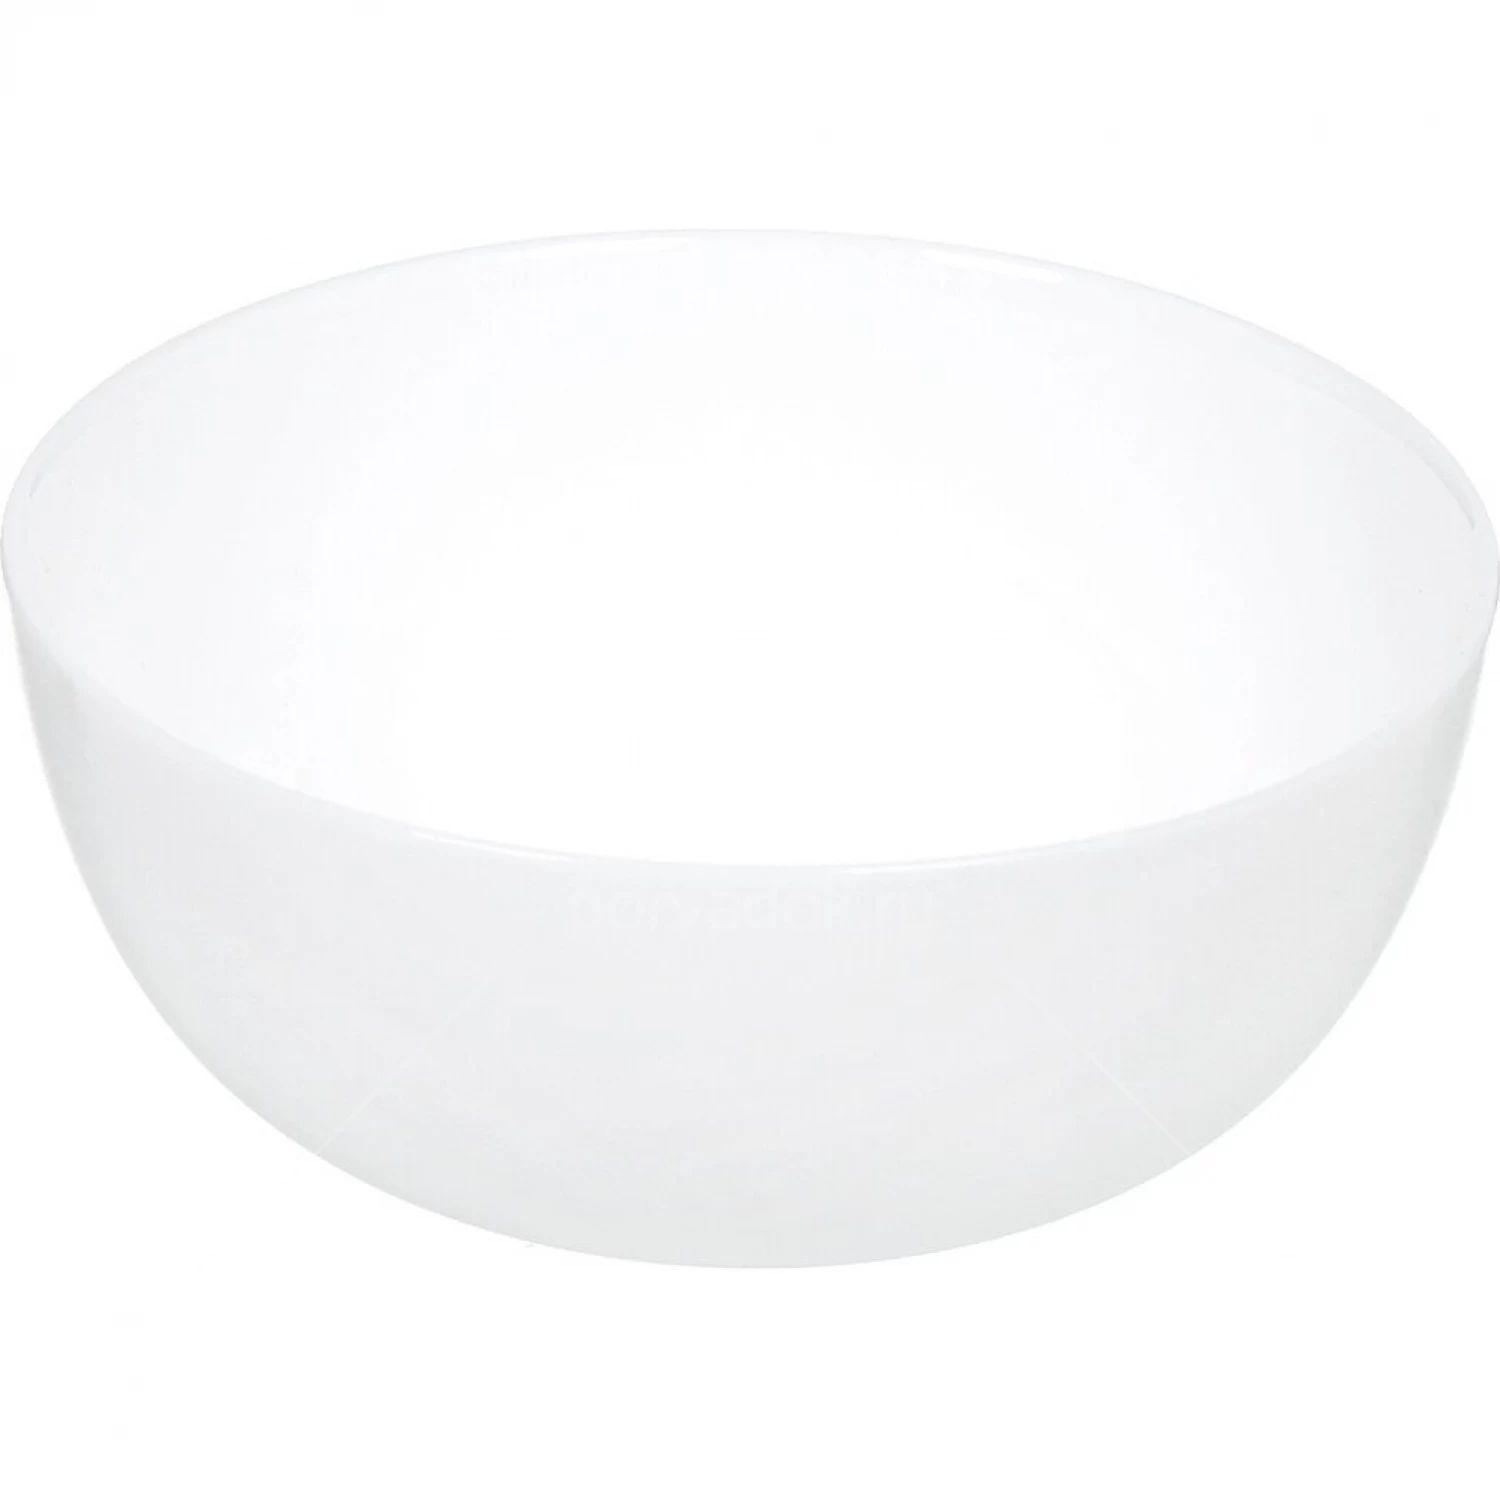 Салатник Luminarc "Дивали" d 21 см, стеклокерамика, белый цвет, ARC